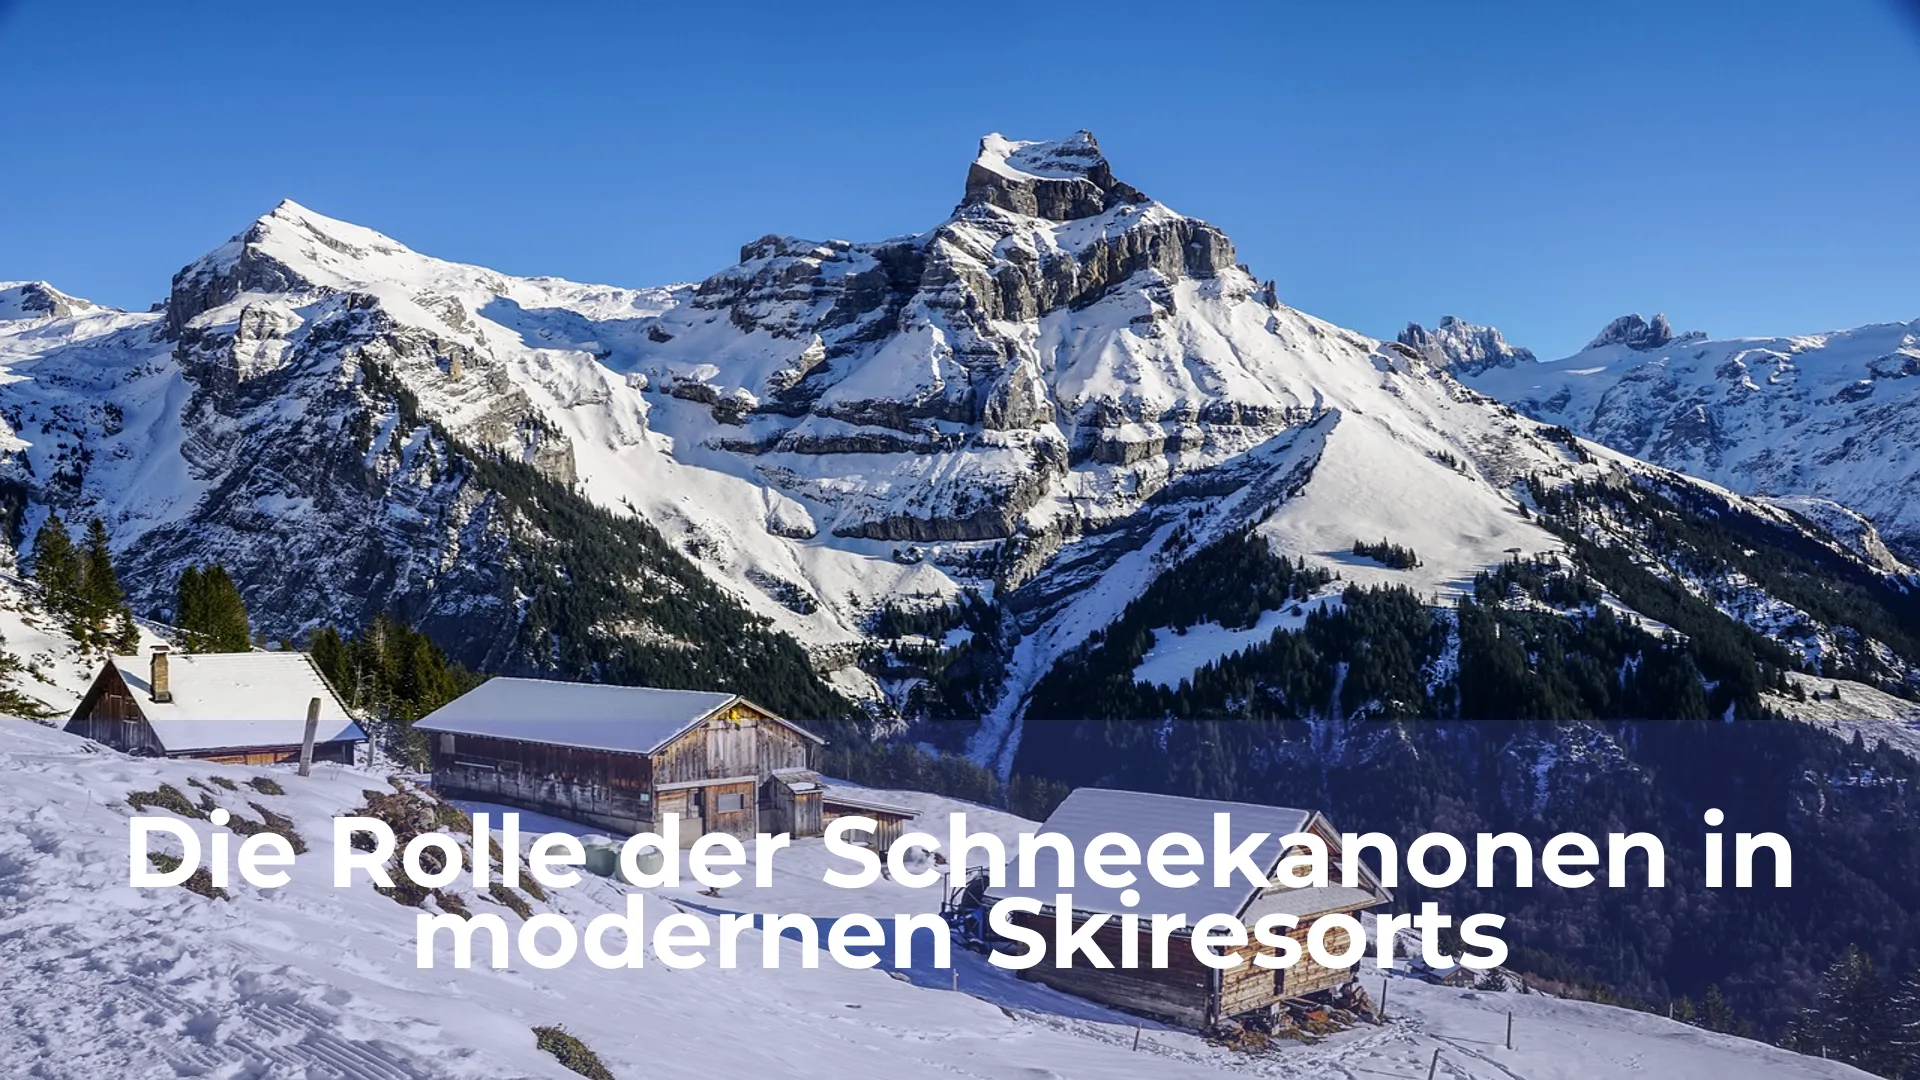 Die rolle der schneekanonen in modernen skiresorts